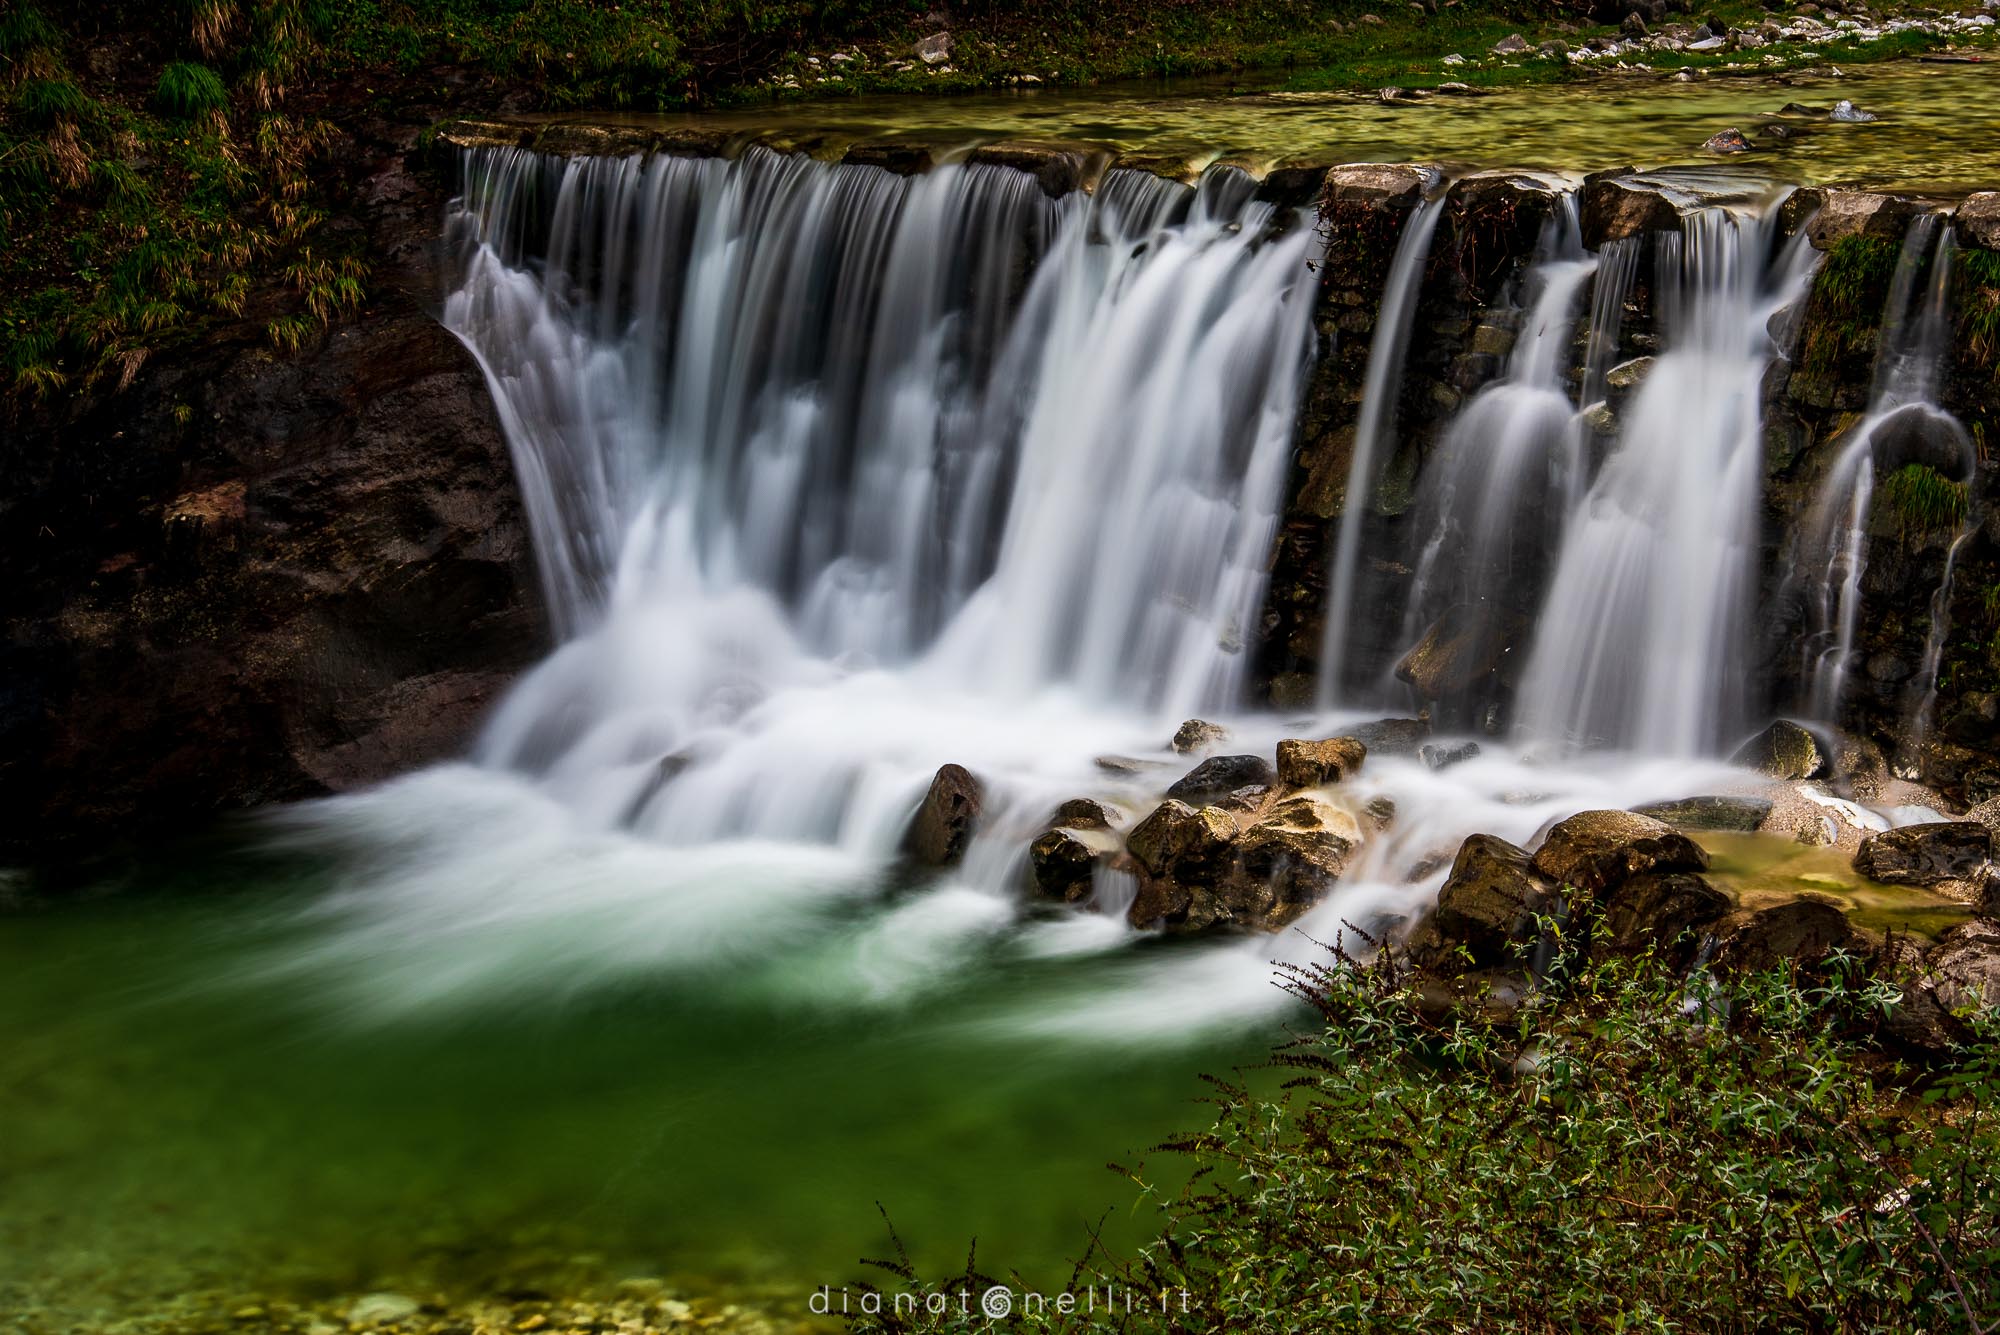 Waterfalls at Malbacco...